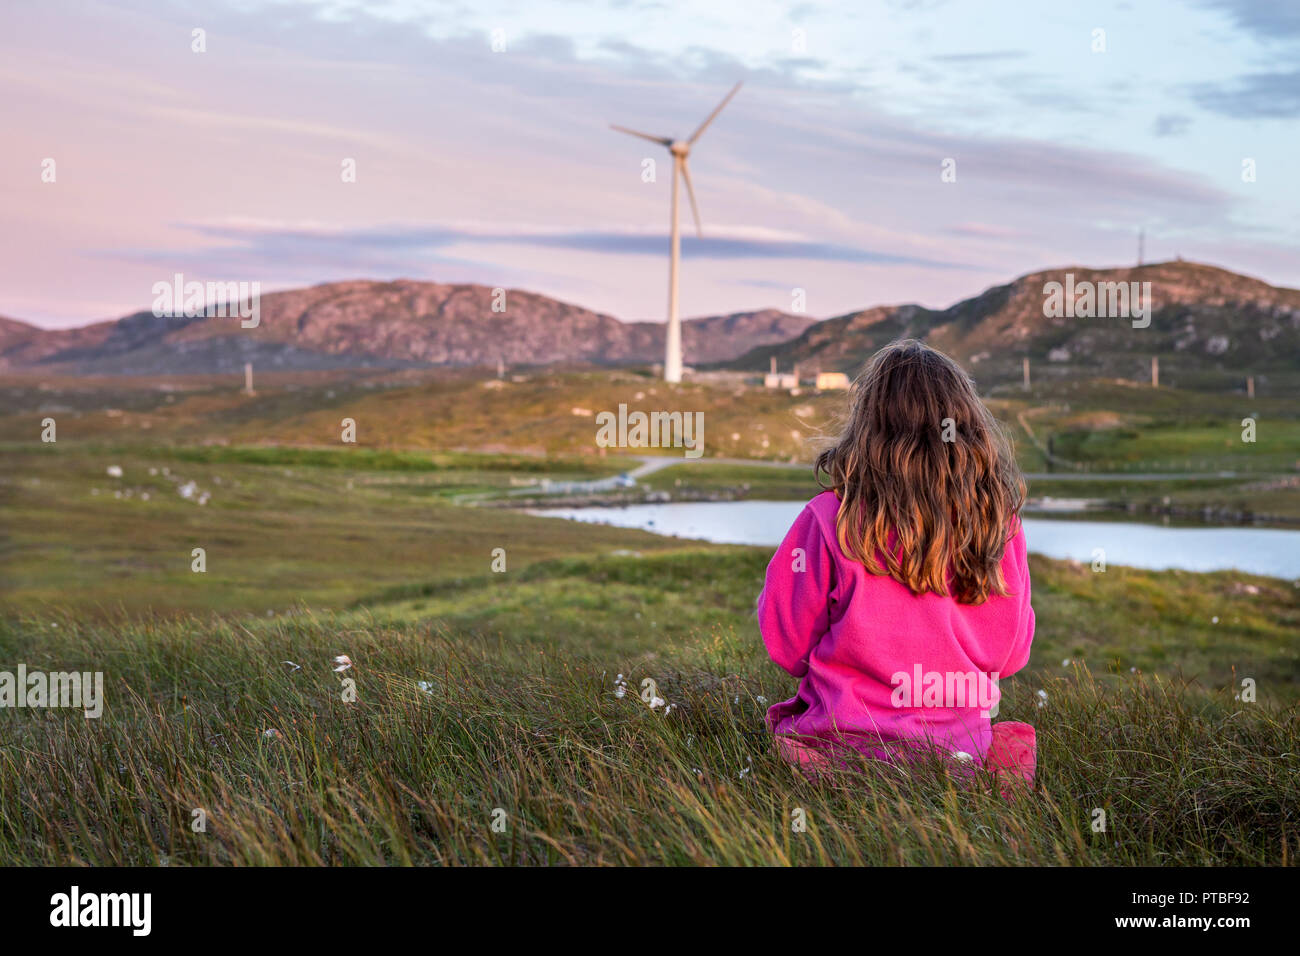 9 Jahre altes Mädchen von hinten gesehen, das in einem sitzt Wiese in schottischer Landschaft bei Sonnenuntergang mit Windturbine in Die Entfernung Stockfoto